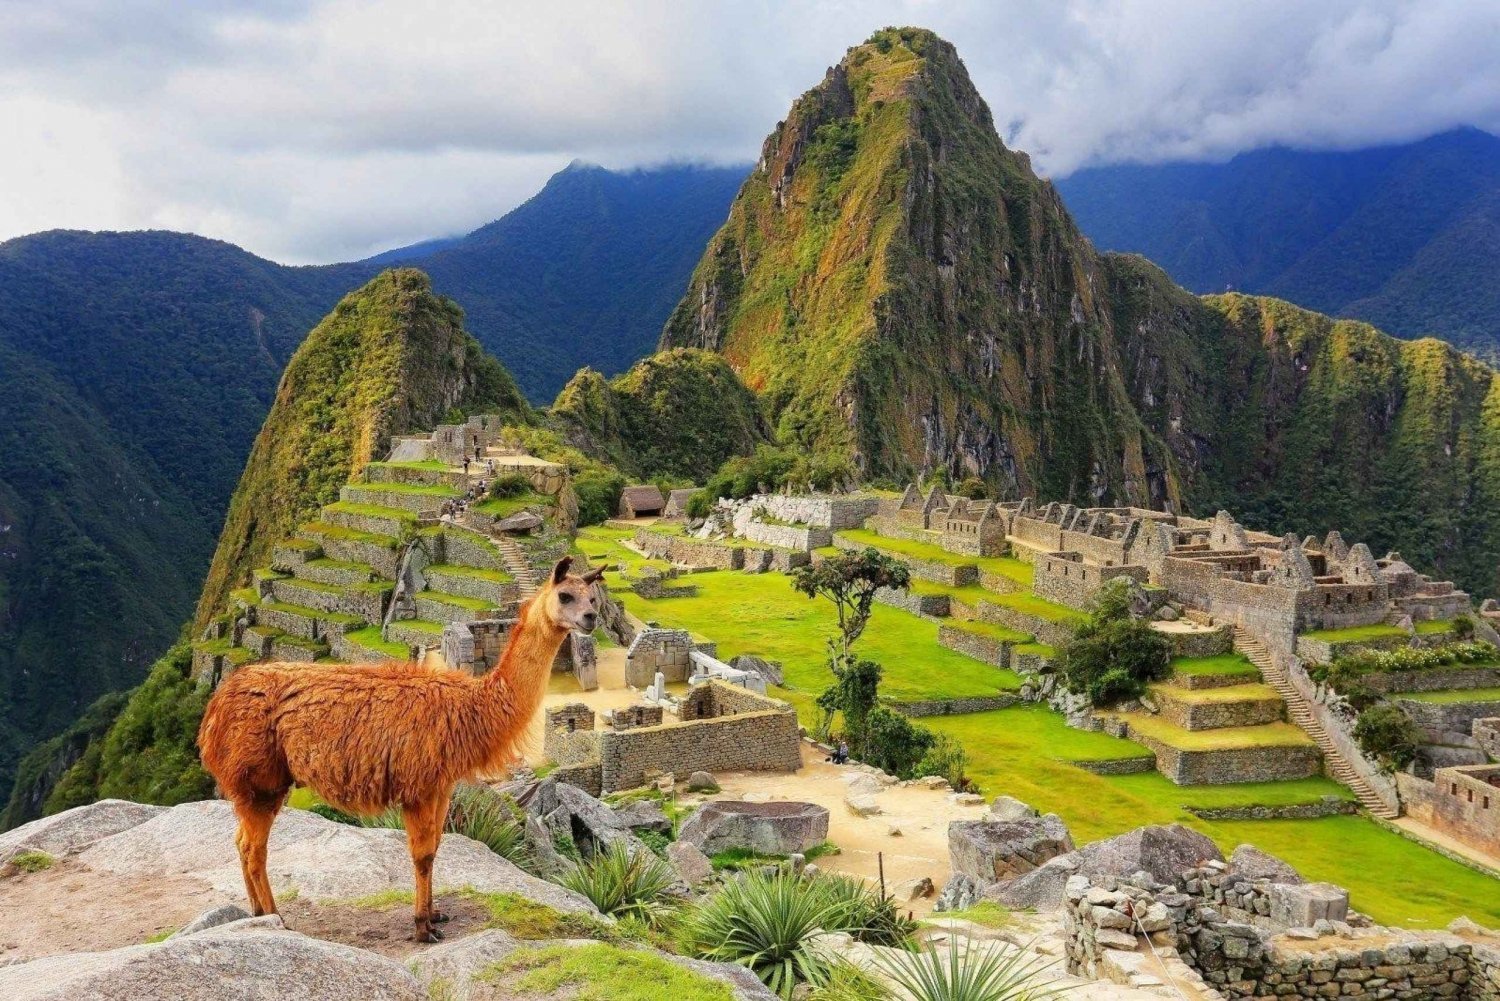 Machu Picchu: Officiell entrébiljett för krets 1 eller 2